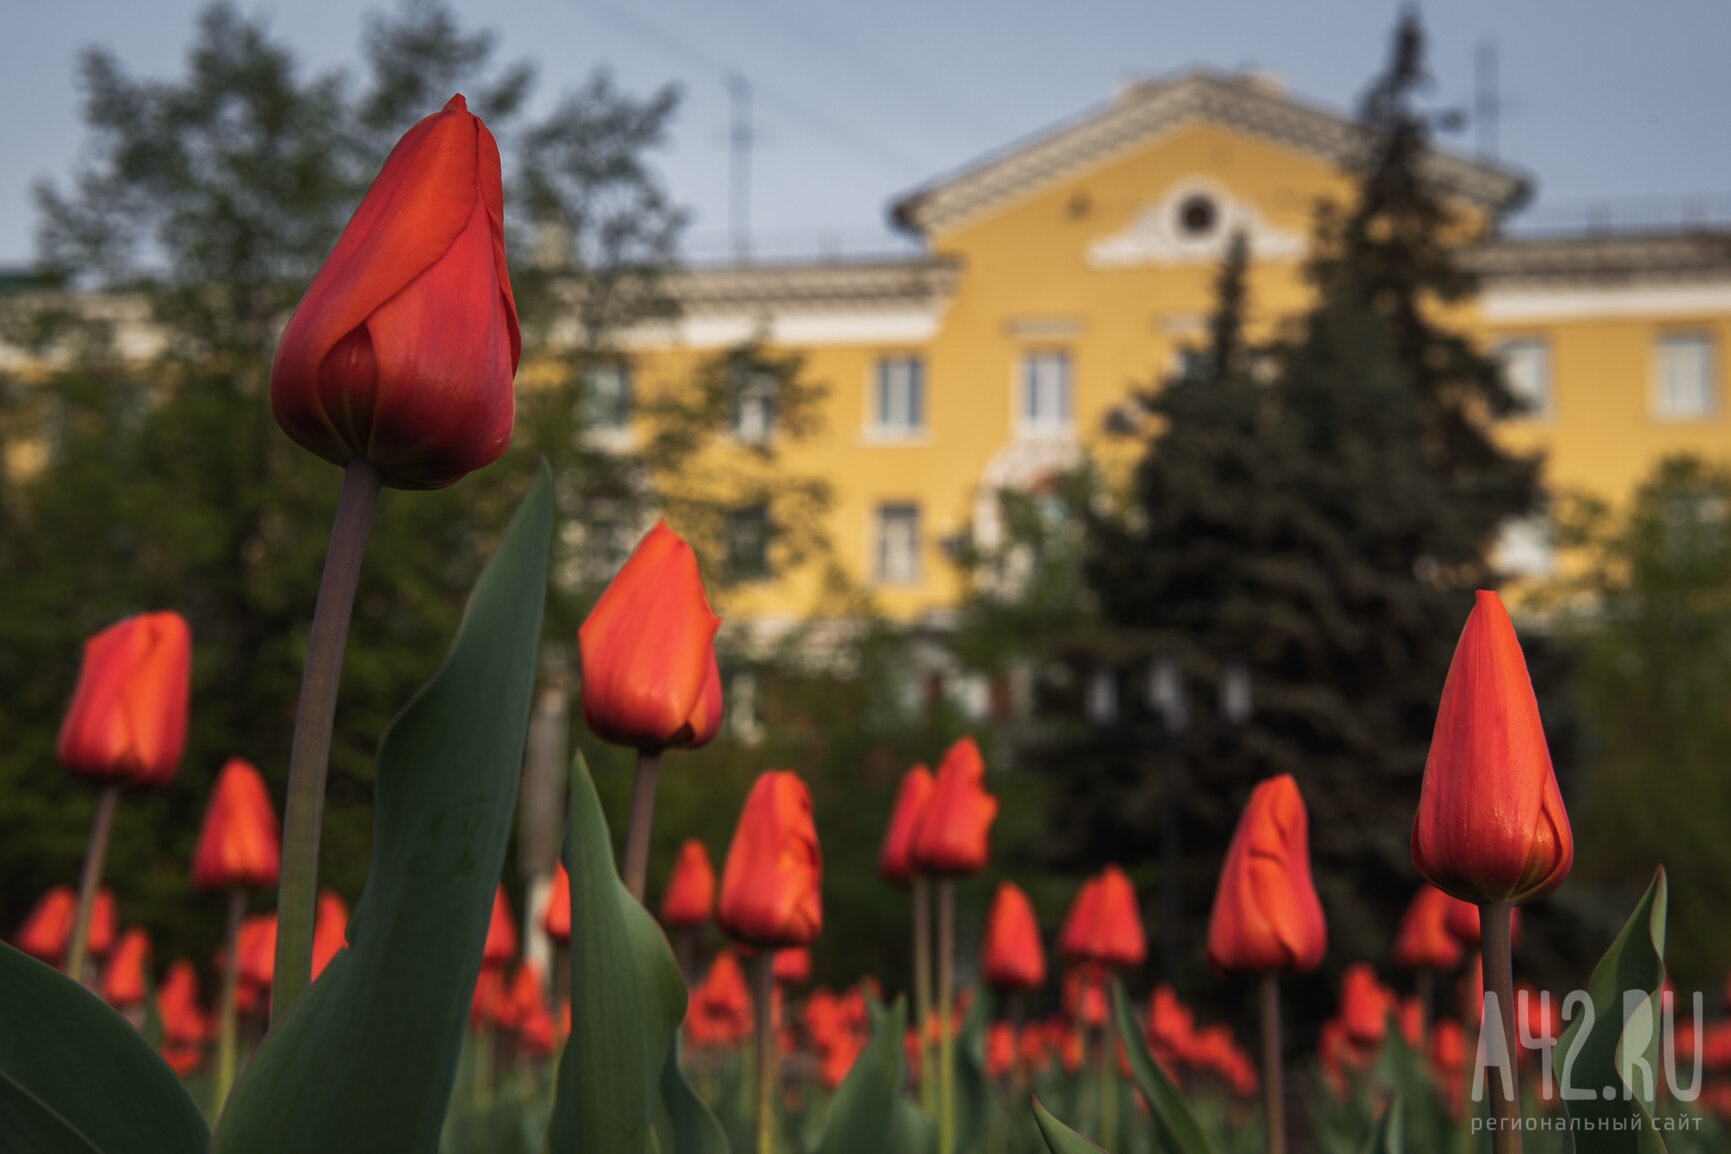 Синоптики пообещали жару до +28 на неделе в Кузбассе